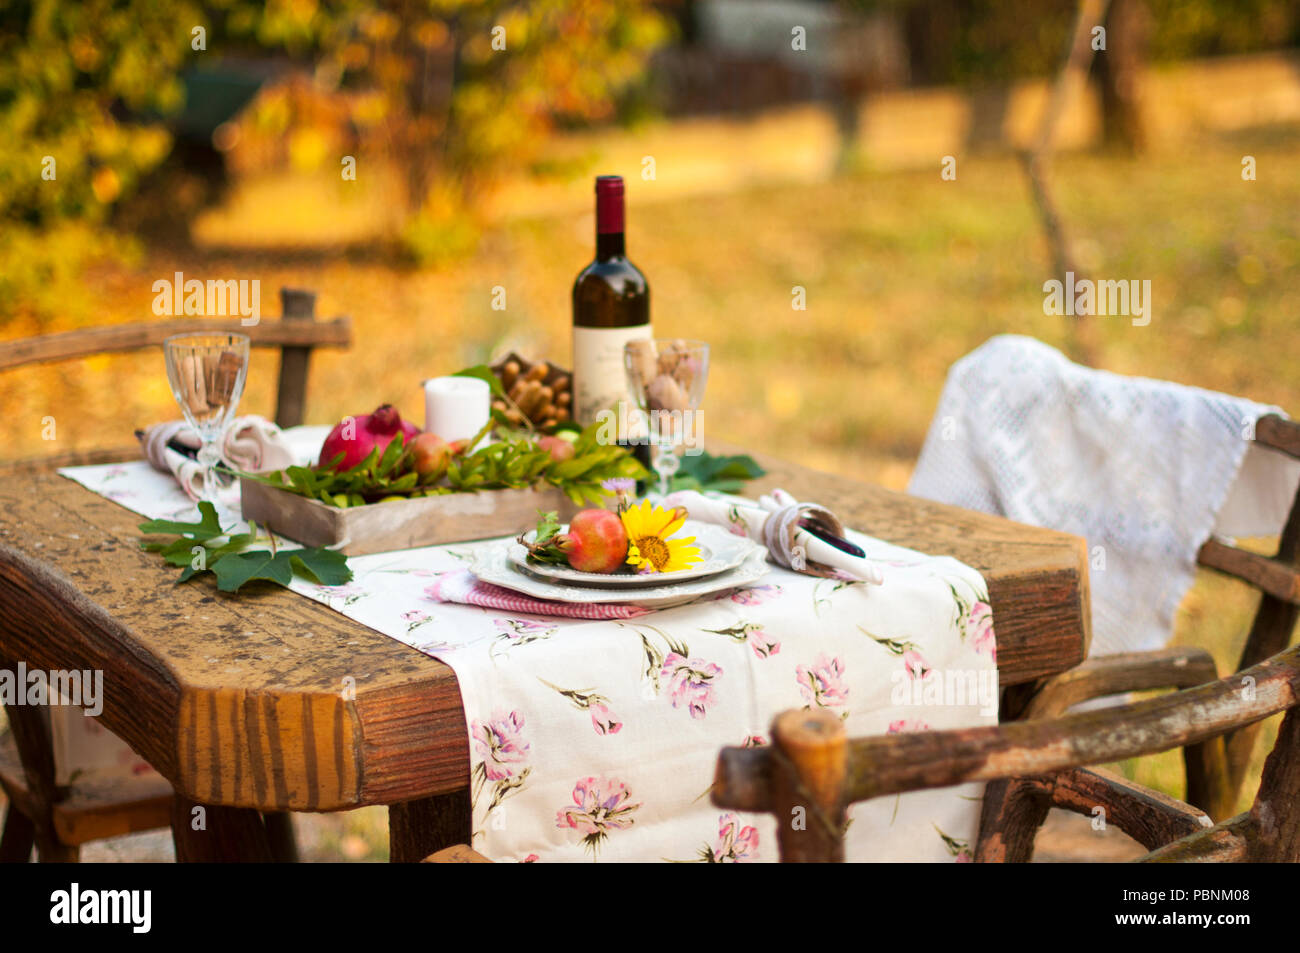 Cena romantica a lume di candela nel giardino d'autunno, impostazione tabella per una bella cena. Vino, frutta, melograno e fiori. Pic-nic all'aria aperta Foto Stock